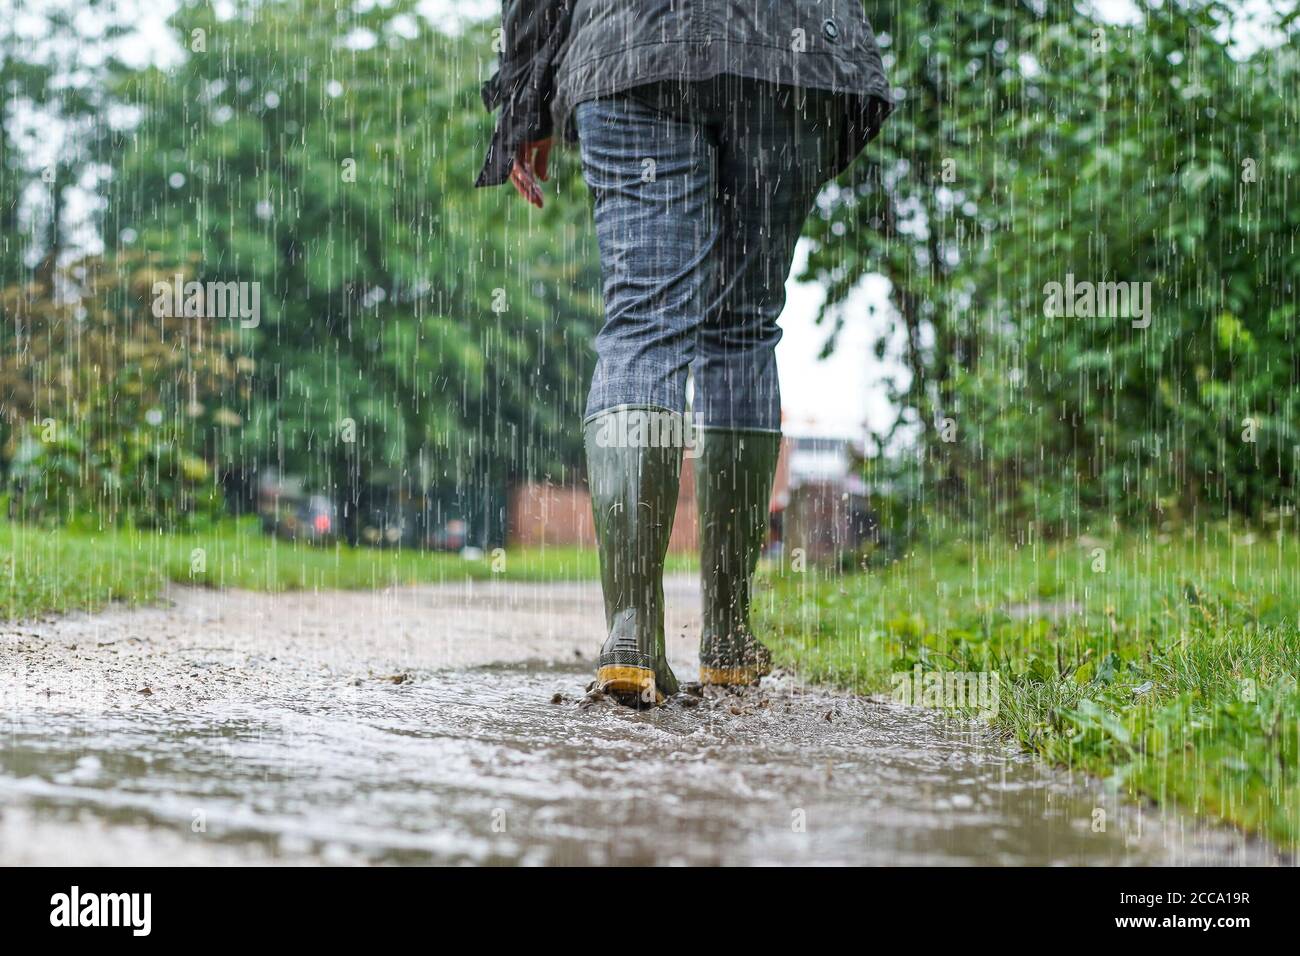 Niedriger Winkel, Rückansicht der Frau (unterer Abschnitt), die Gummistiefel und Gummistiefel trägt, bei starkem Regen, die von der Kamera weg auf dem schlammigen UK-Pfad geht. Stockfoto